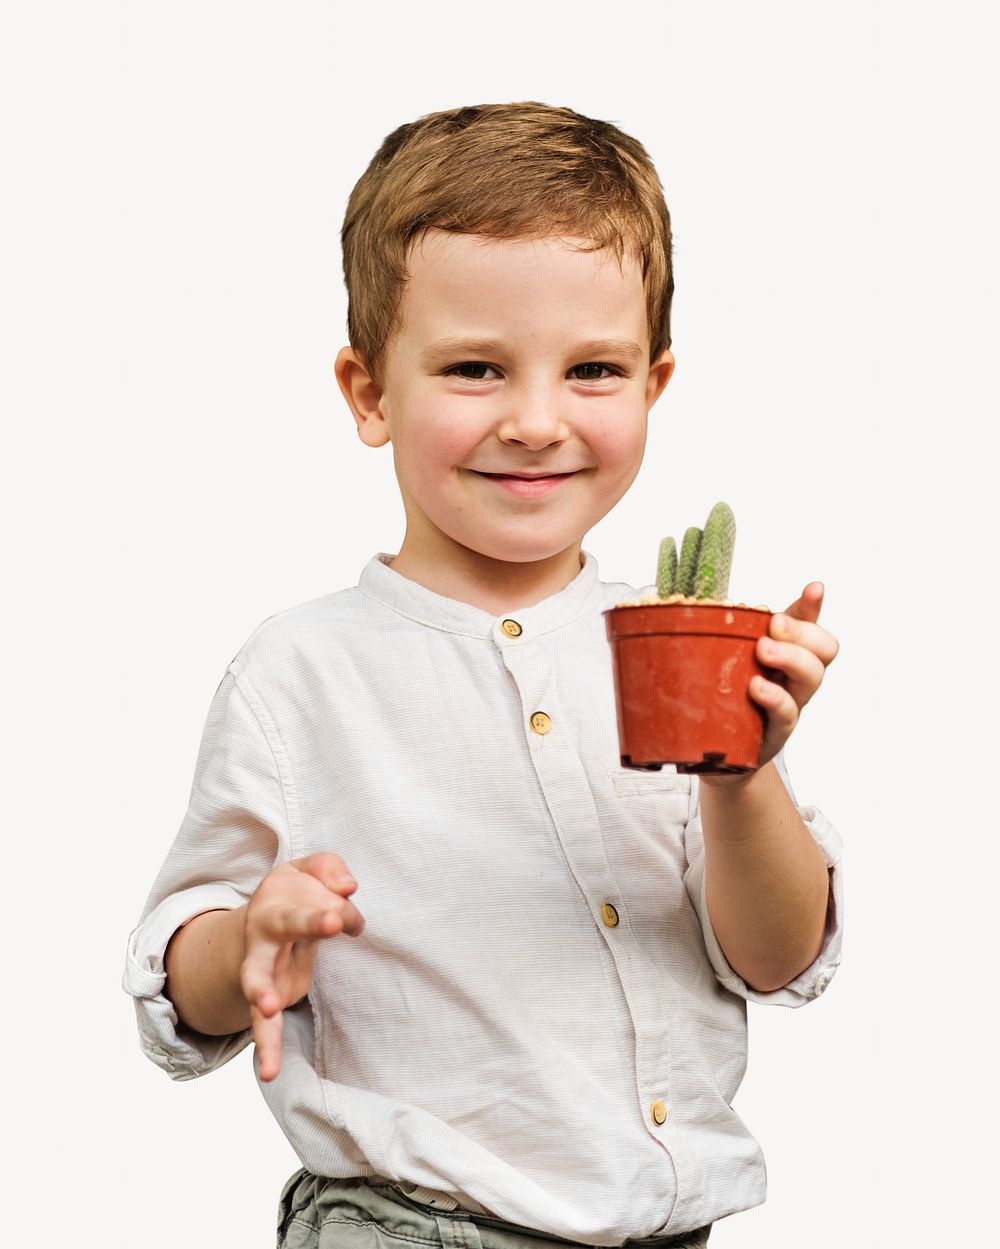 Boy holding plant, isolated image